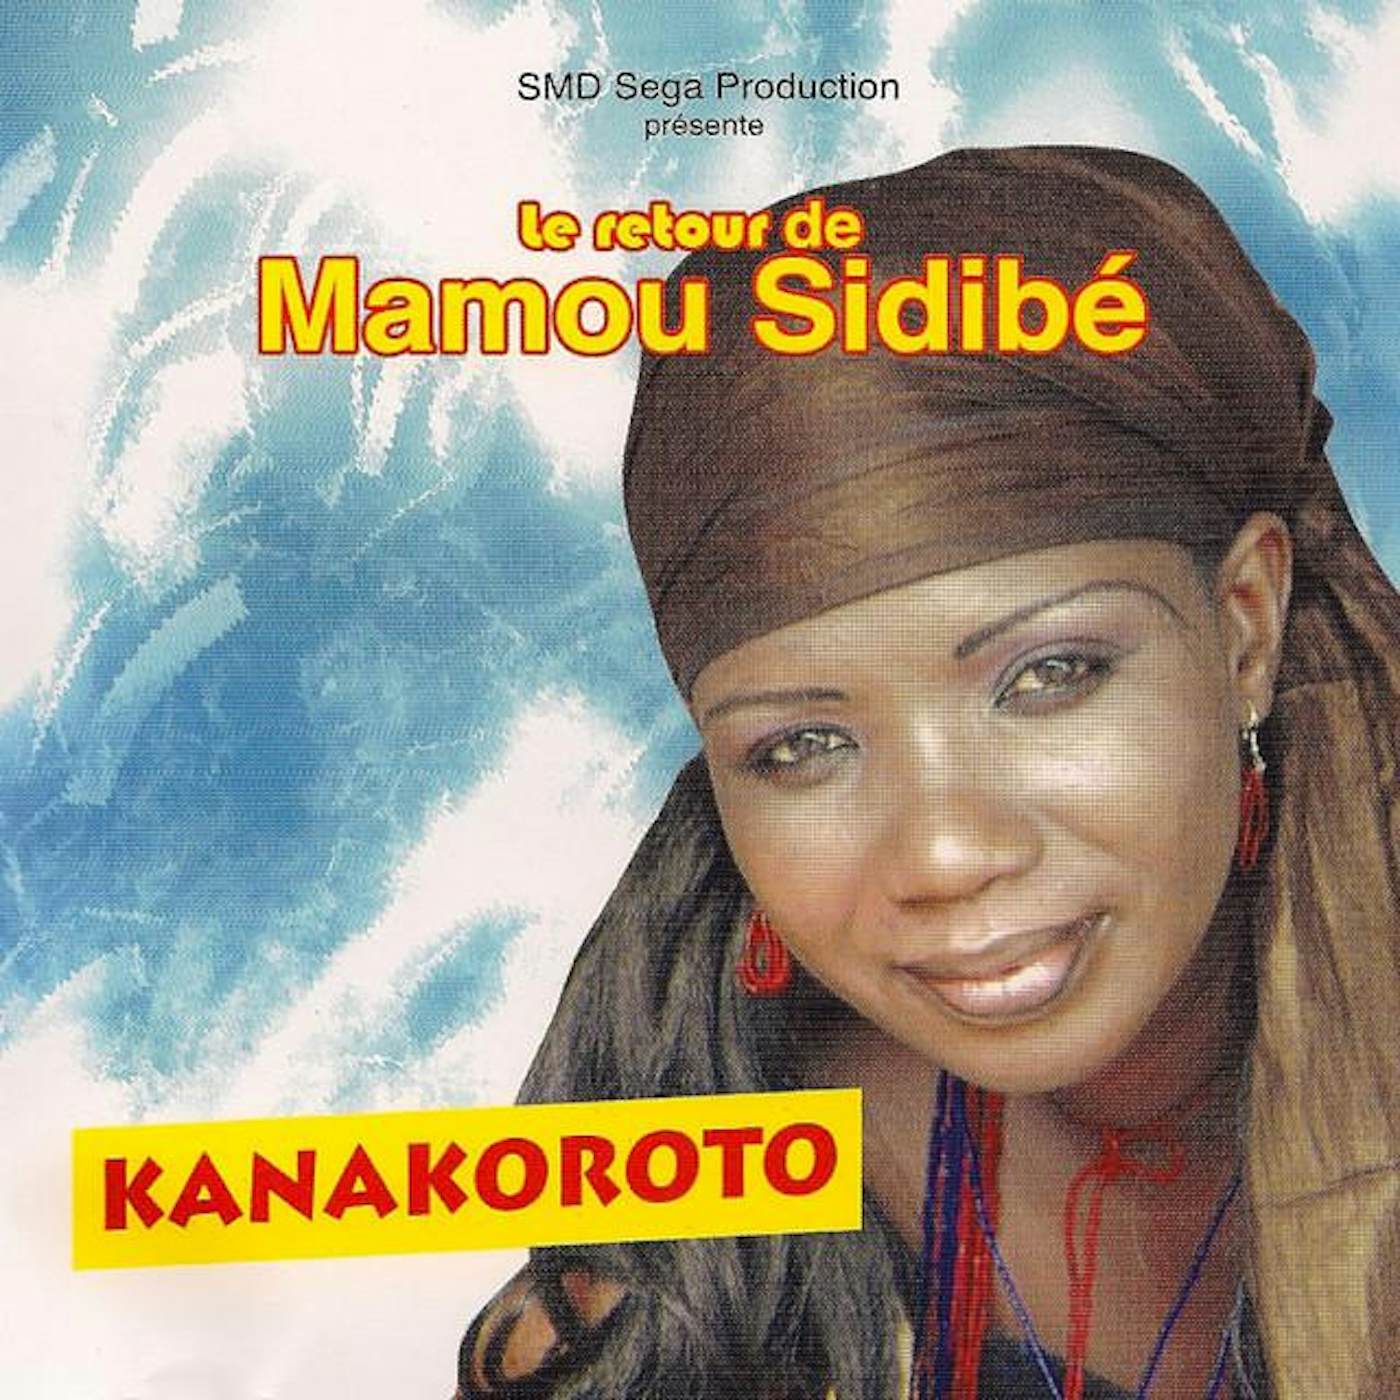 Mamou Sidibé